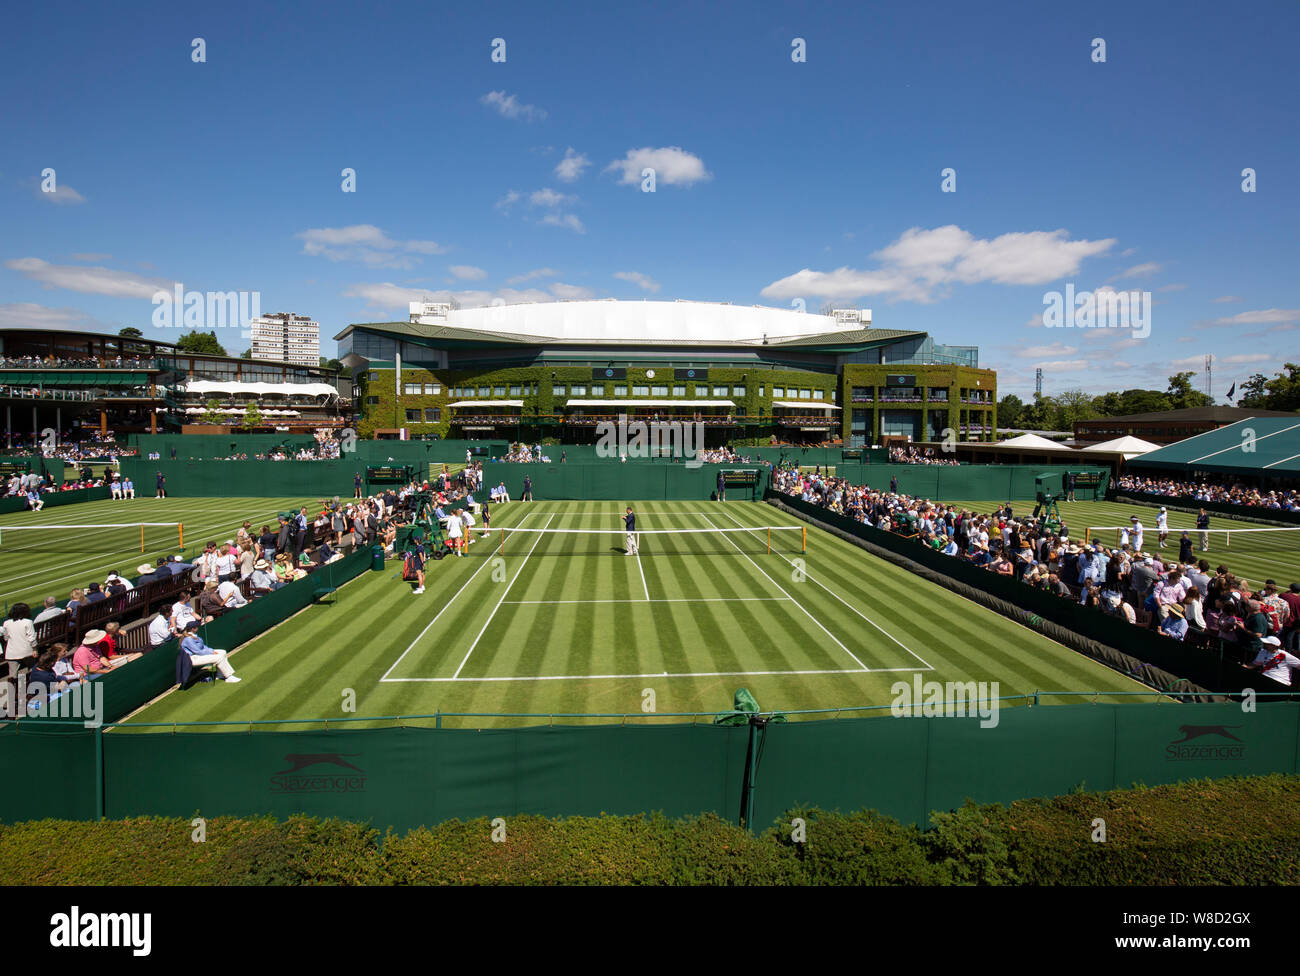 Vue panoramique de l'extérieur de l'édifice du Centre avec les tribunaux dans l'arrière-plan, 2019 de Wimbledon, Londres, Angleterre, Royaume-Uni Banque D'Images